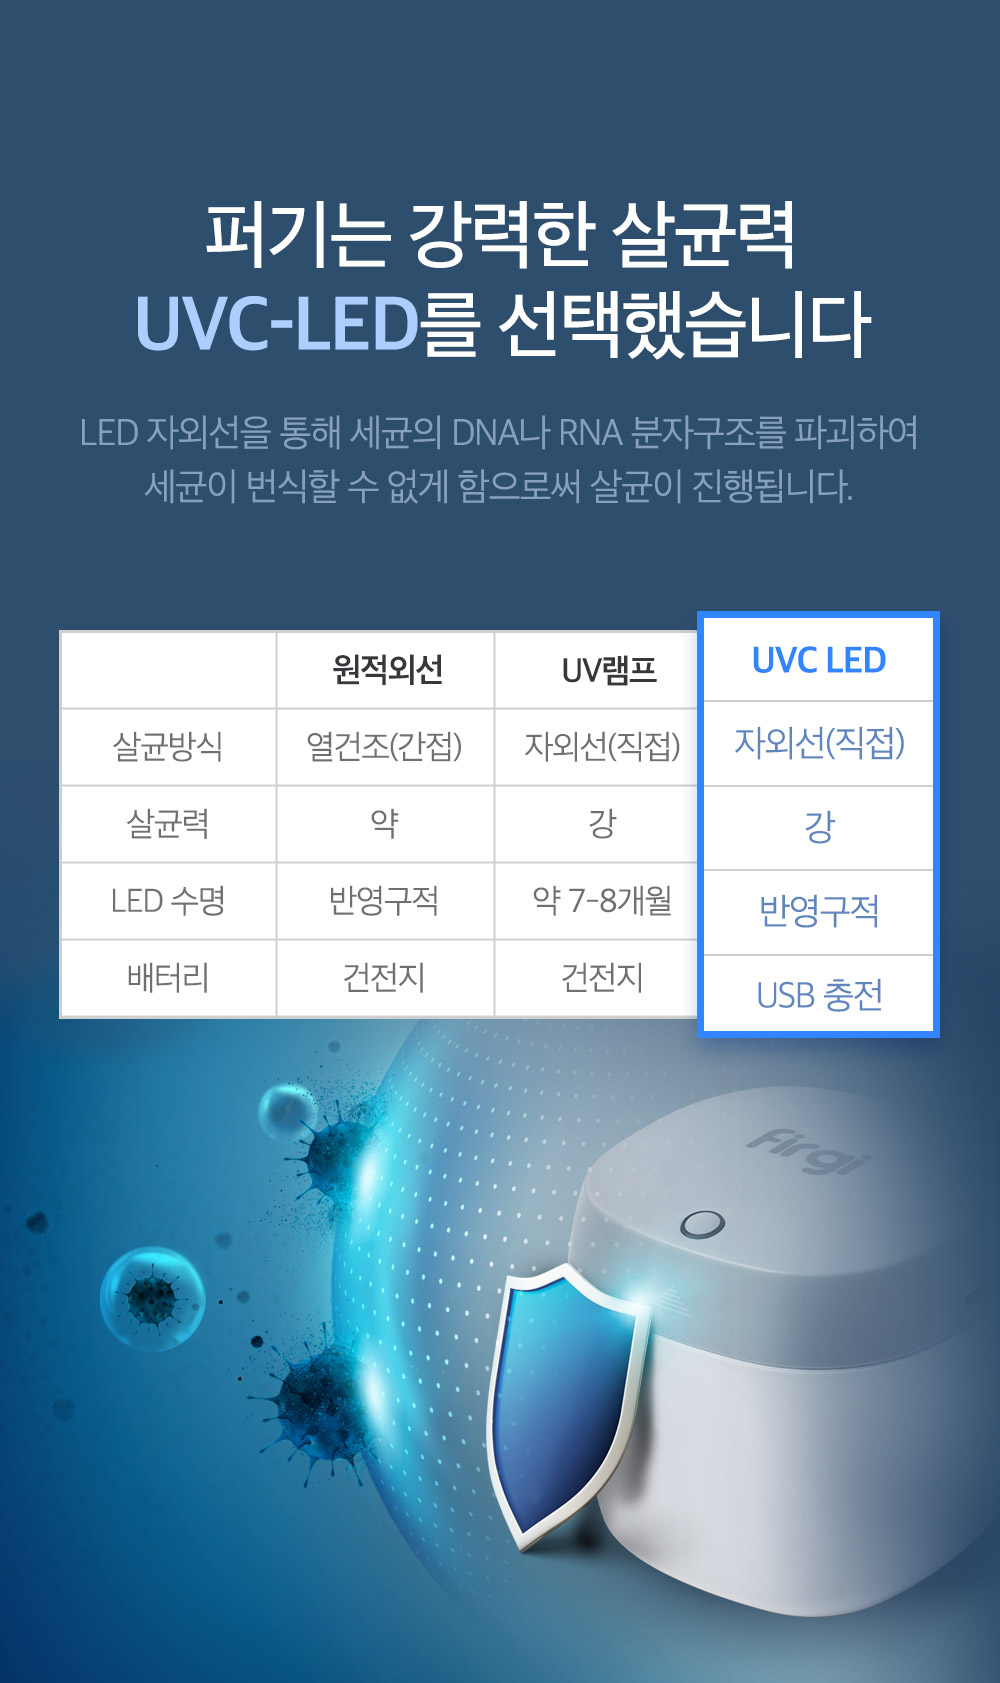 UV LED 비교